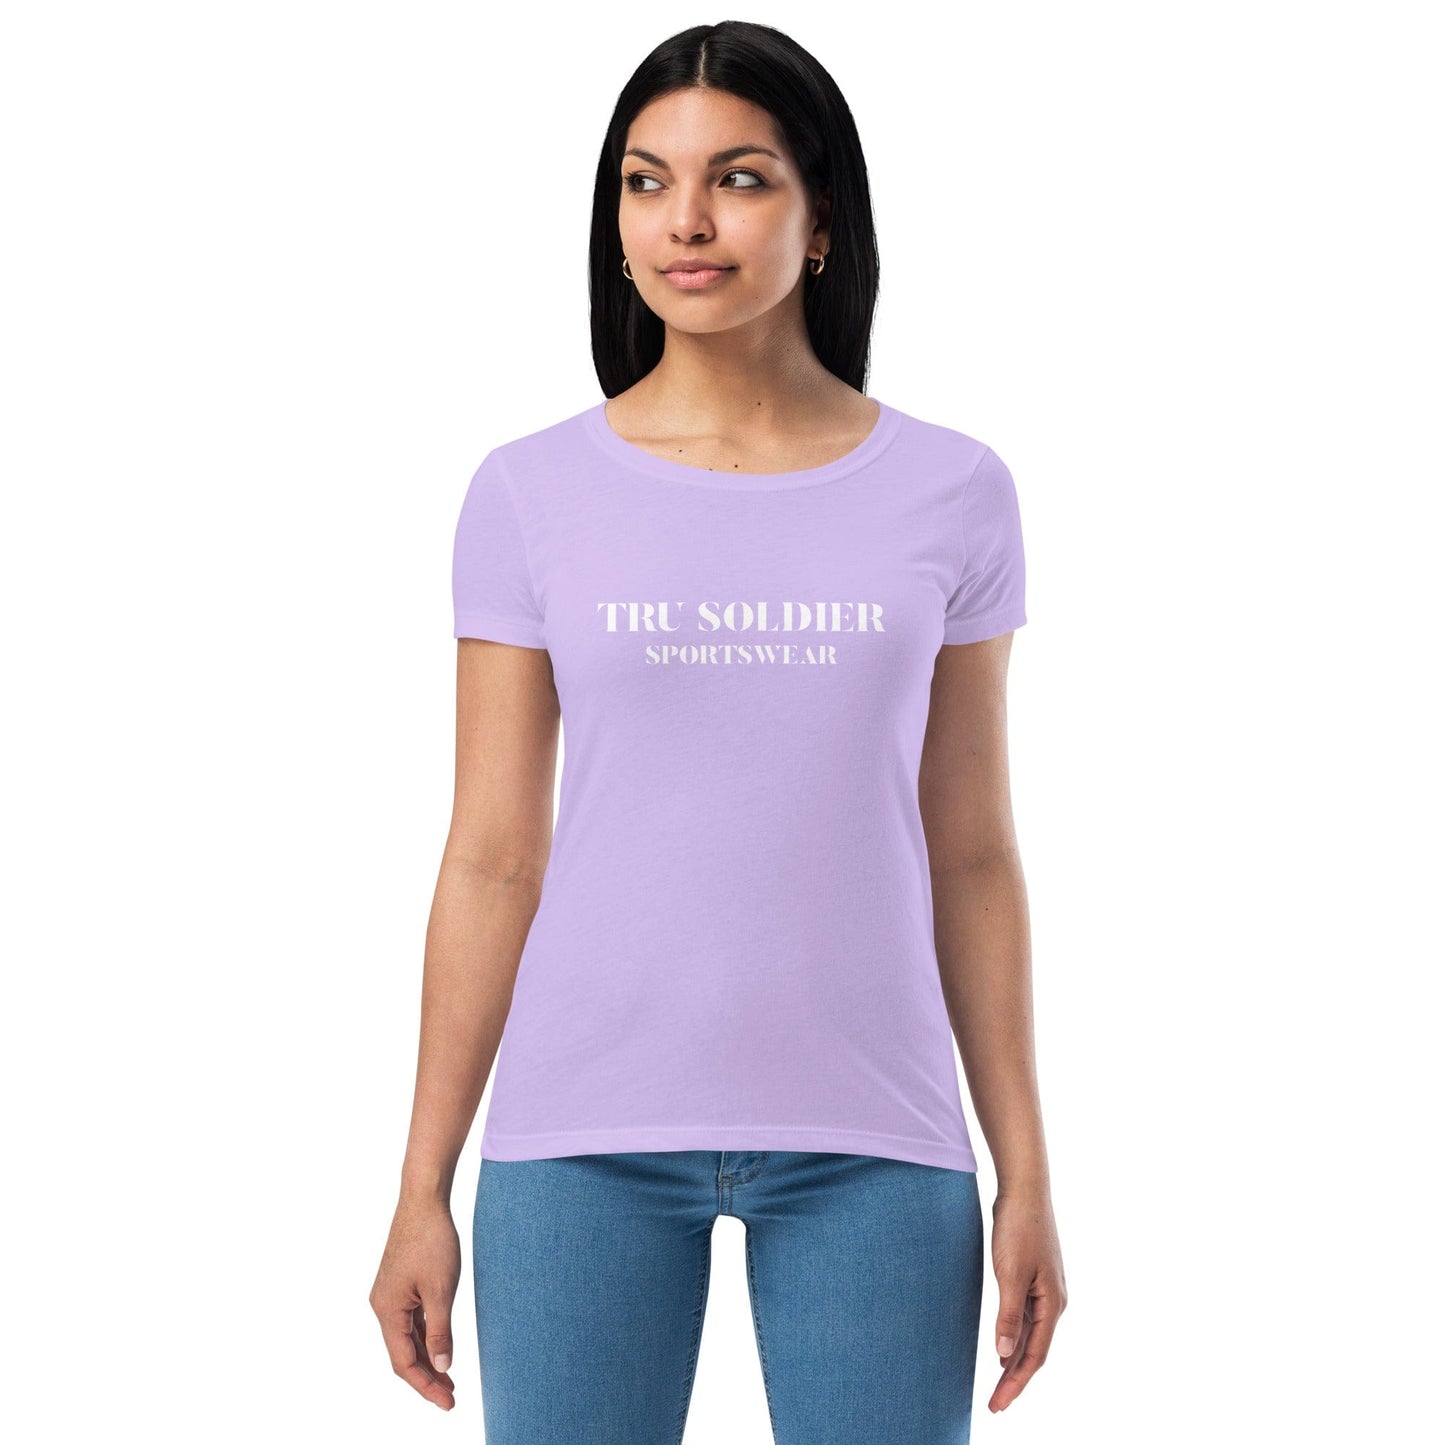 Tru Soldier Sportswear  Lilac / XS Women’s fitted t-shirt